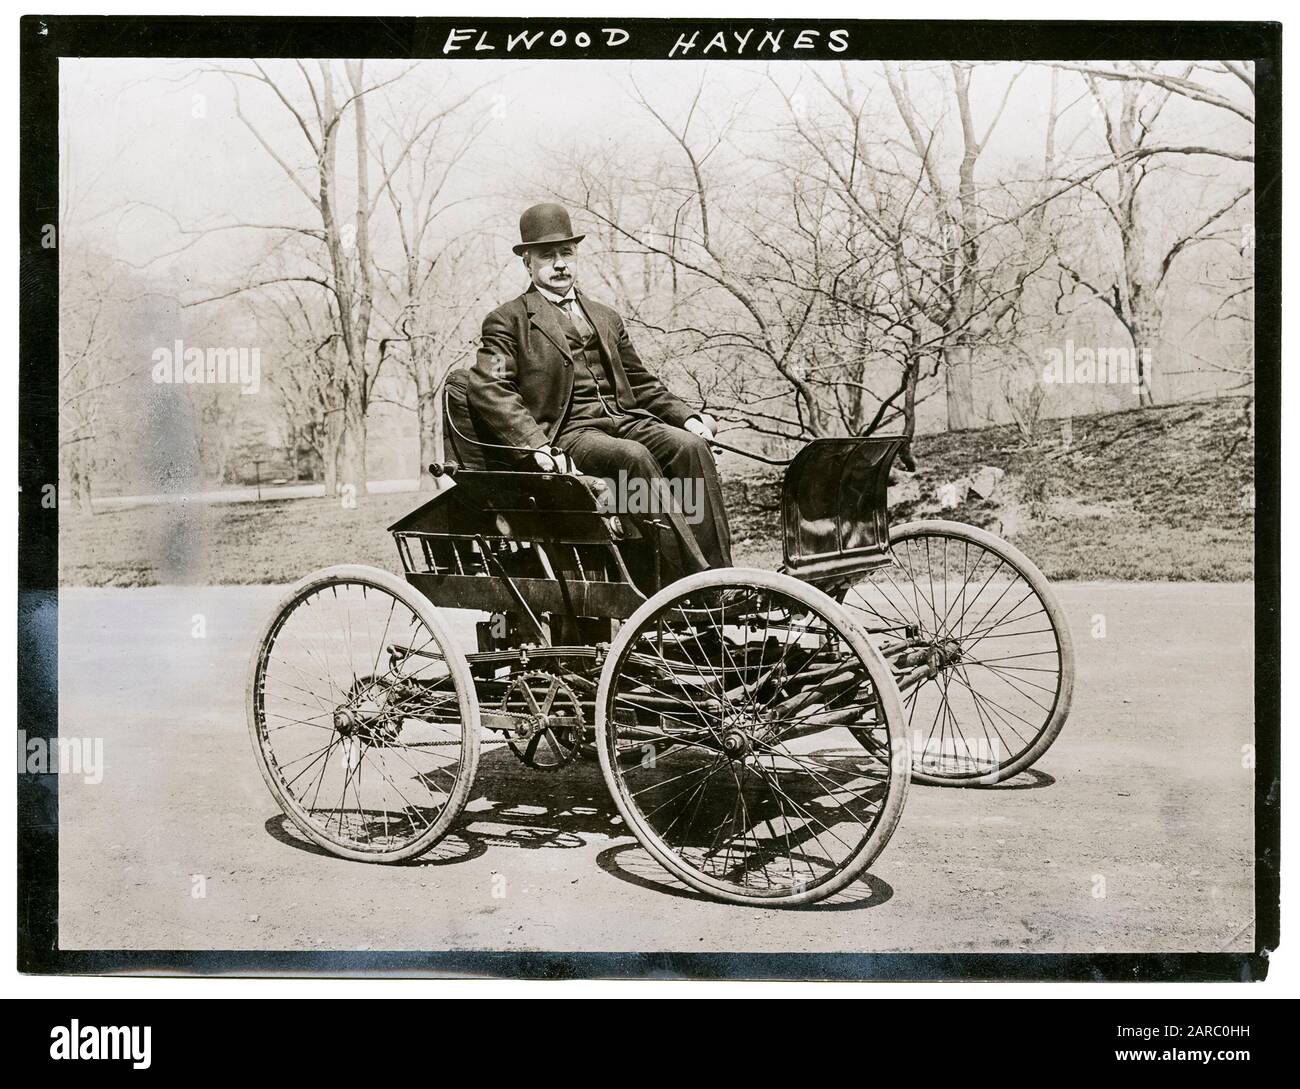 Elwood Haynes (1857-1925) nella sua prima vettura, il Pioneer, 1893-1894, fotografa circa 1910 Foto Stock